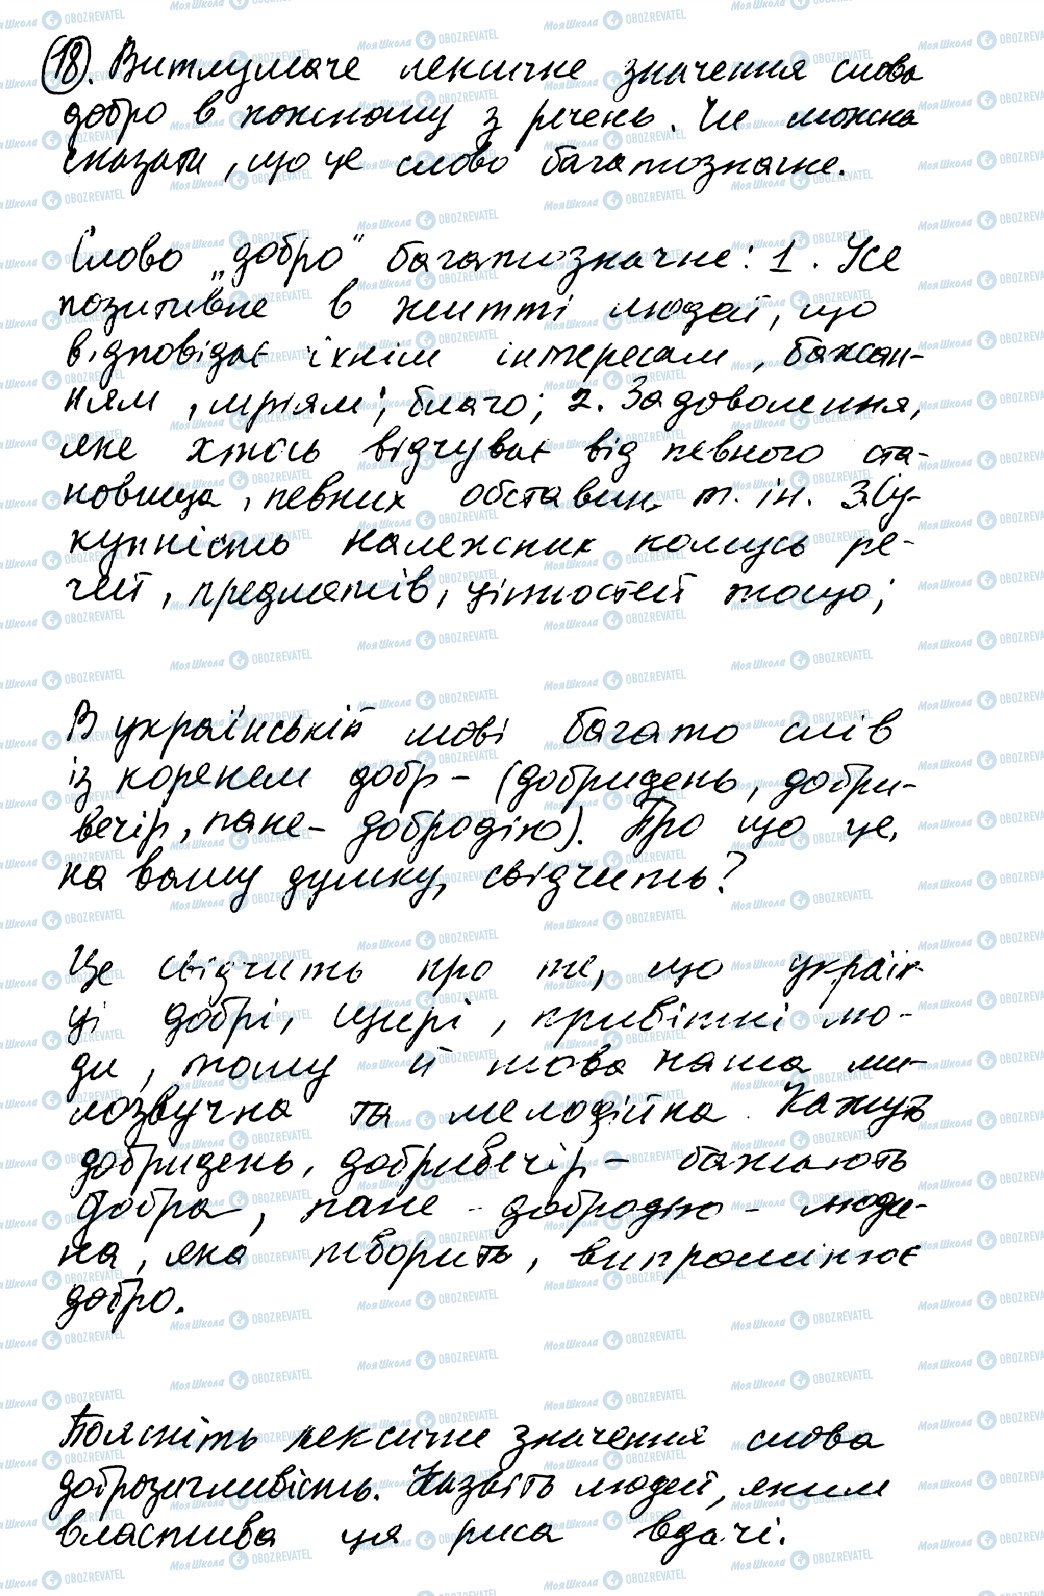 ГДЗ Українська мова 8 клас сторінка 18